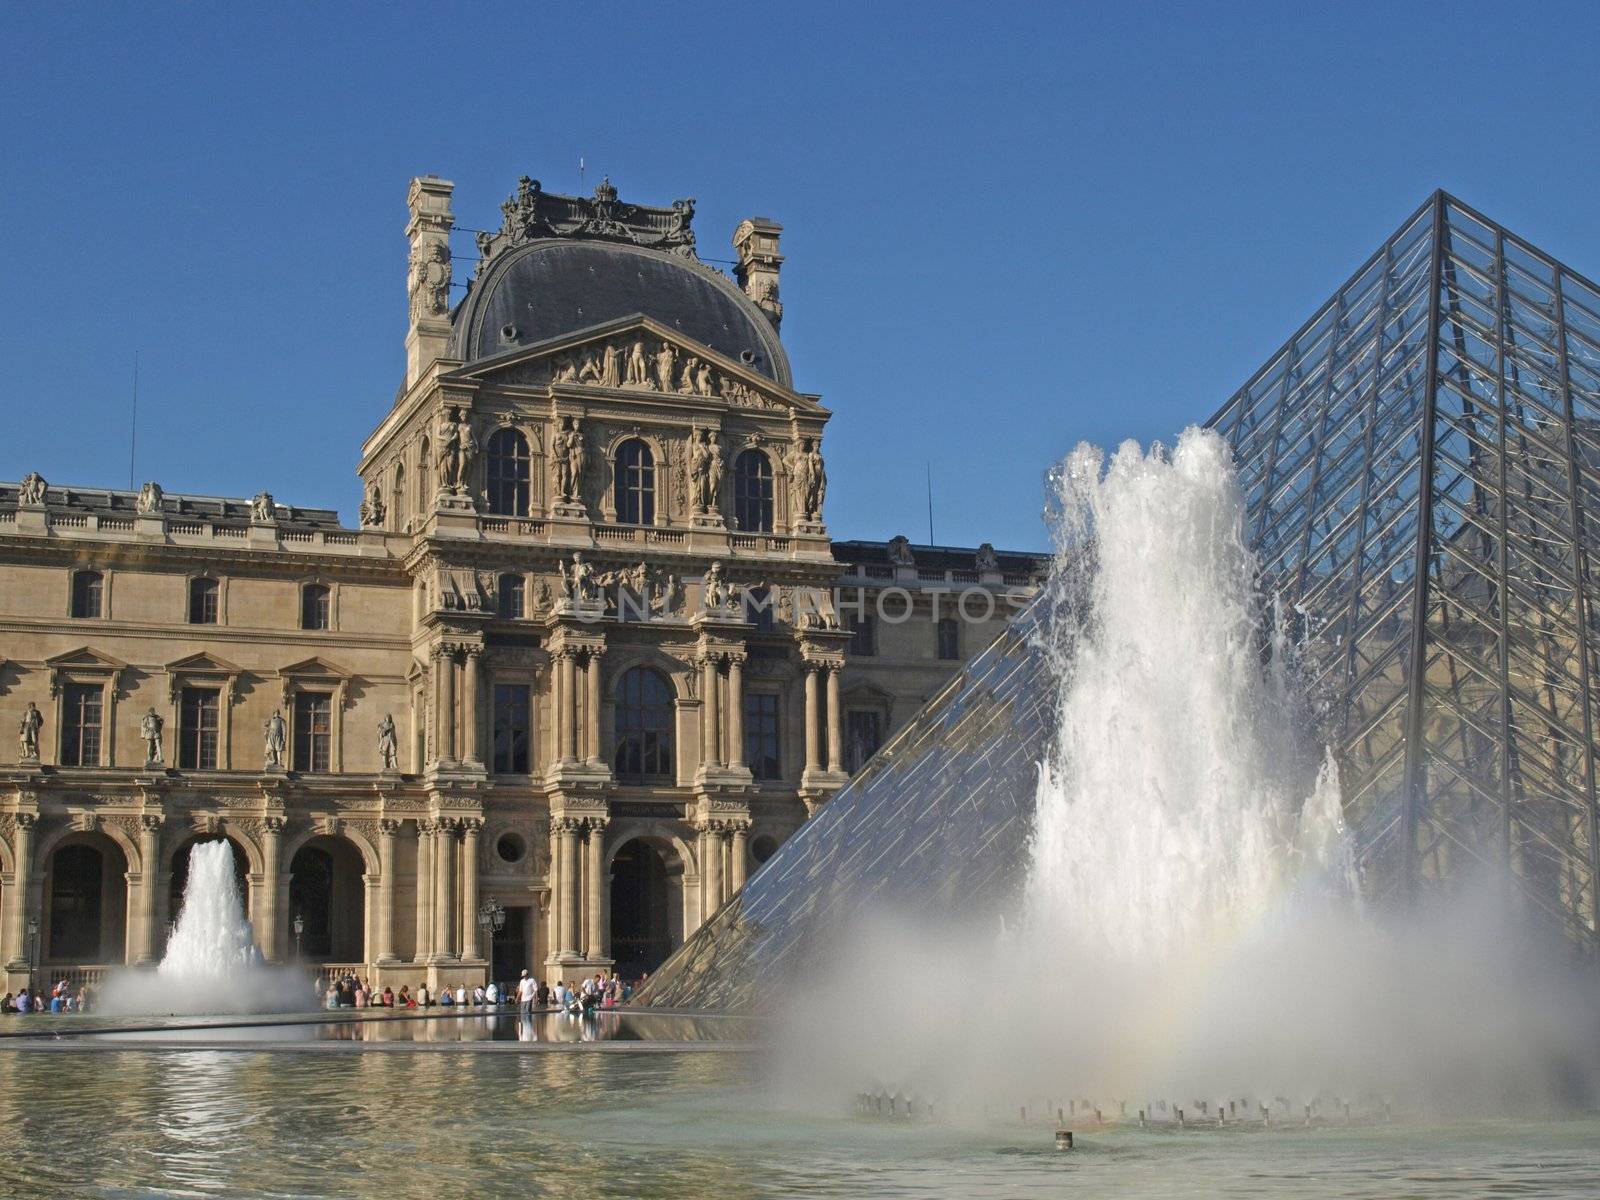 Paris - The Louvre Museum by jbouzou